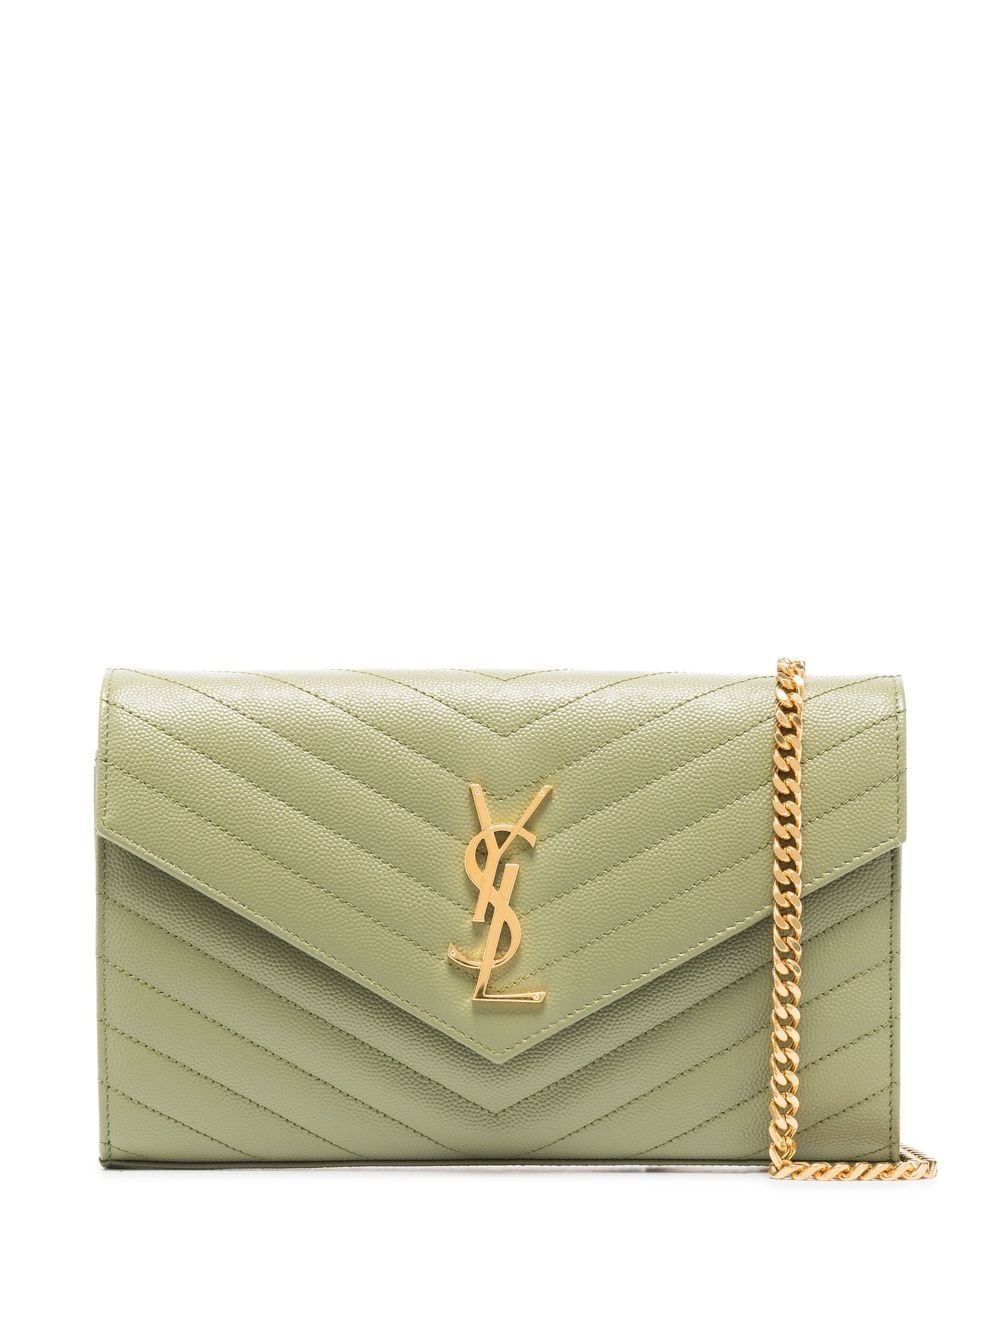 Louis Vuitton Monogram Partition Clutch Bag - Farfetch